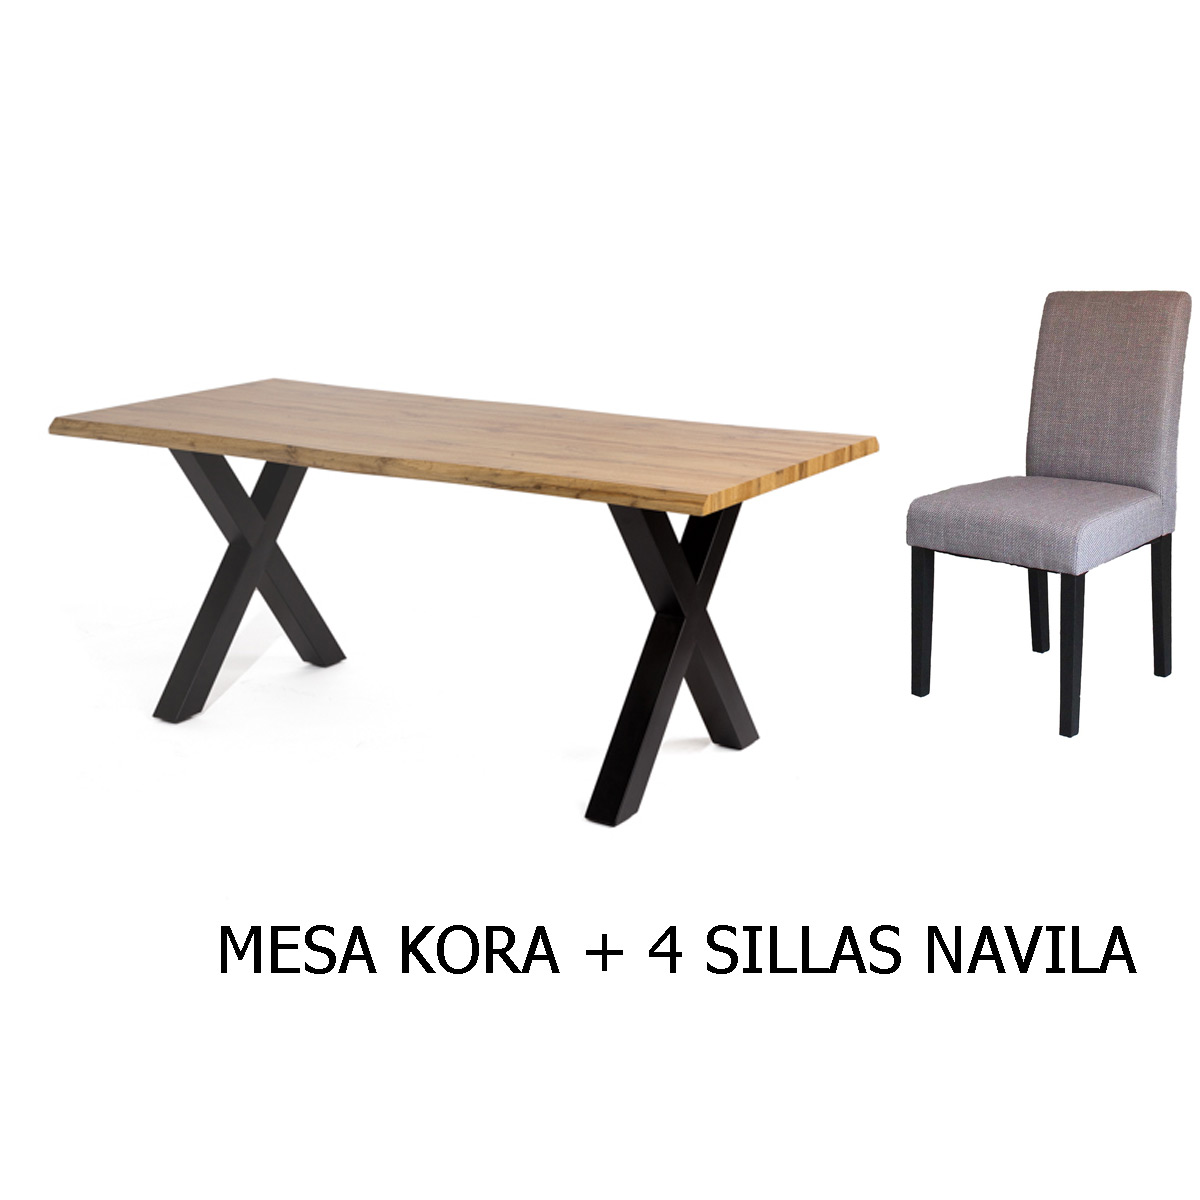 Conjunto mesa KORA + 4 sillas NAVILA